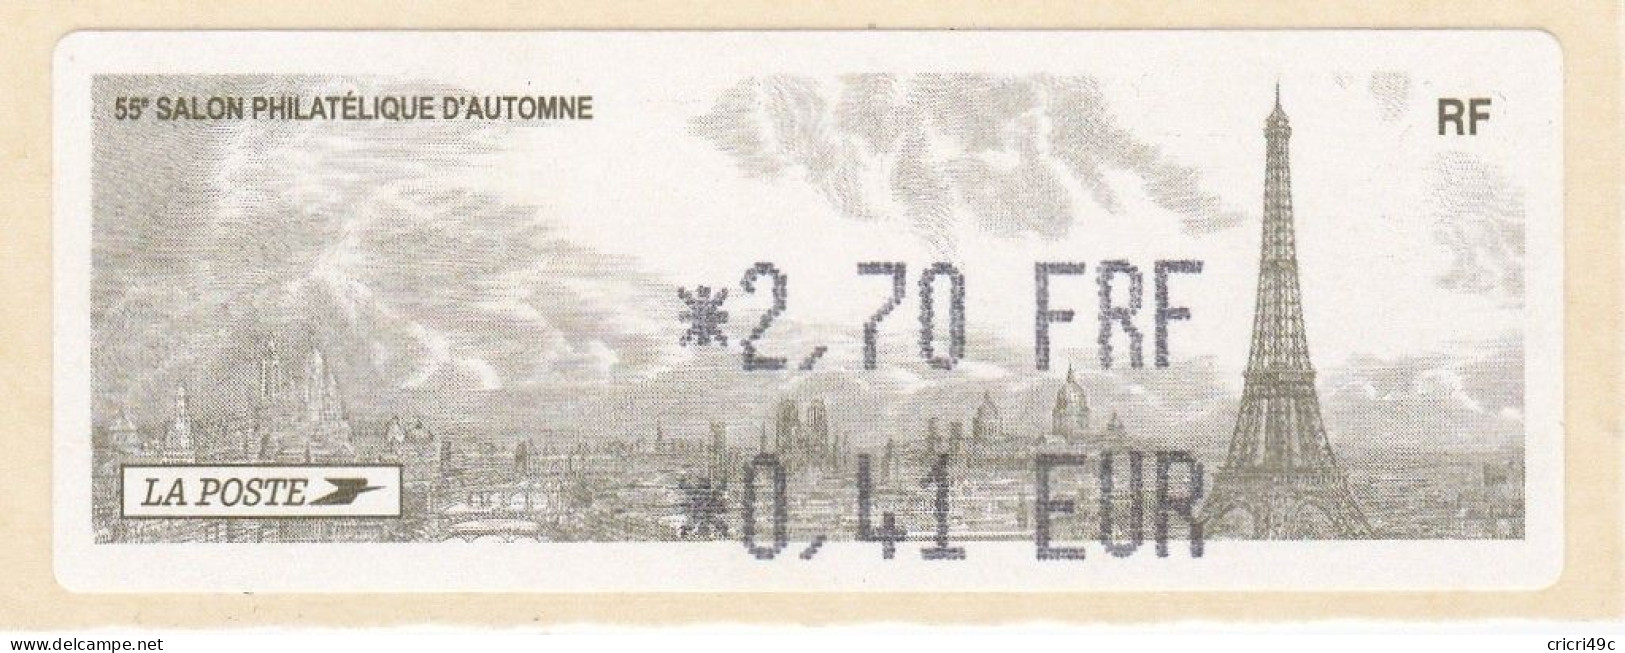 1 ATM LISA. 55è SALON PHILATHELIQUE D"AUTOMNE PARIS  2001. 2.70F  Neufs** - 2010-... Geïllustreerde Frankeervignetten